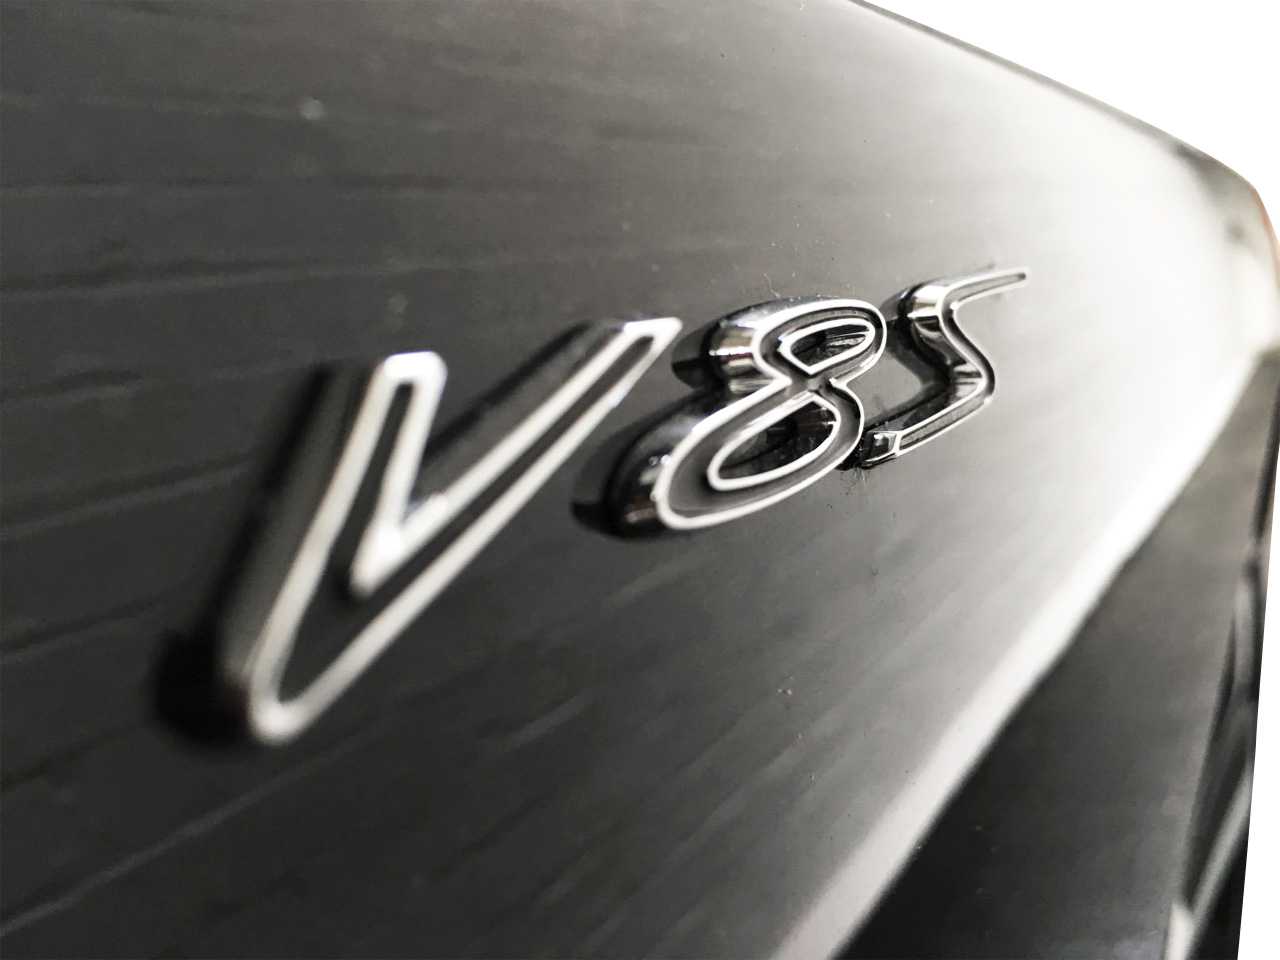 V8s